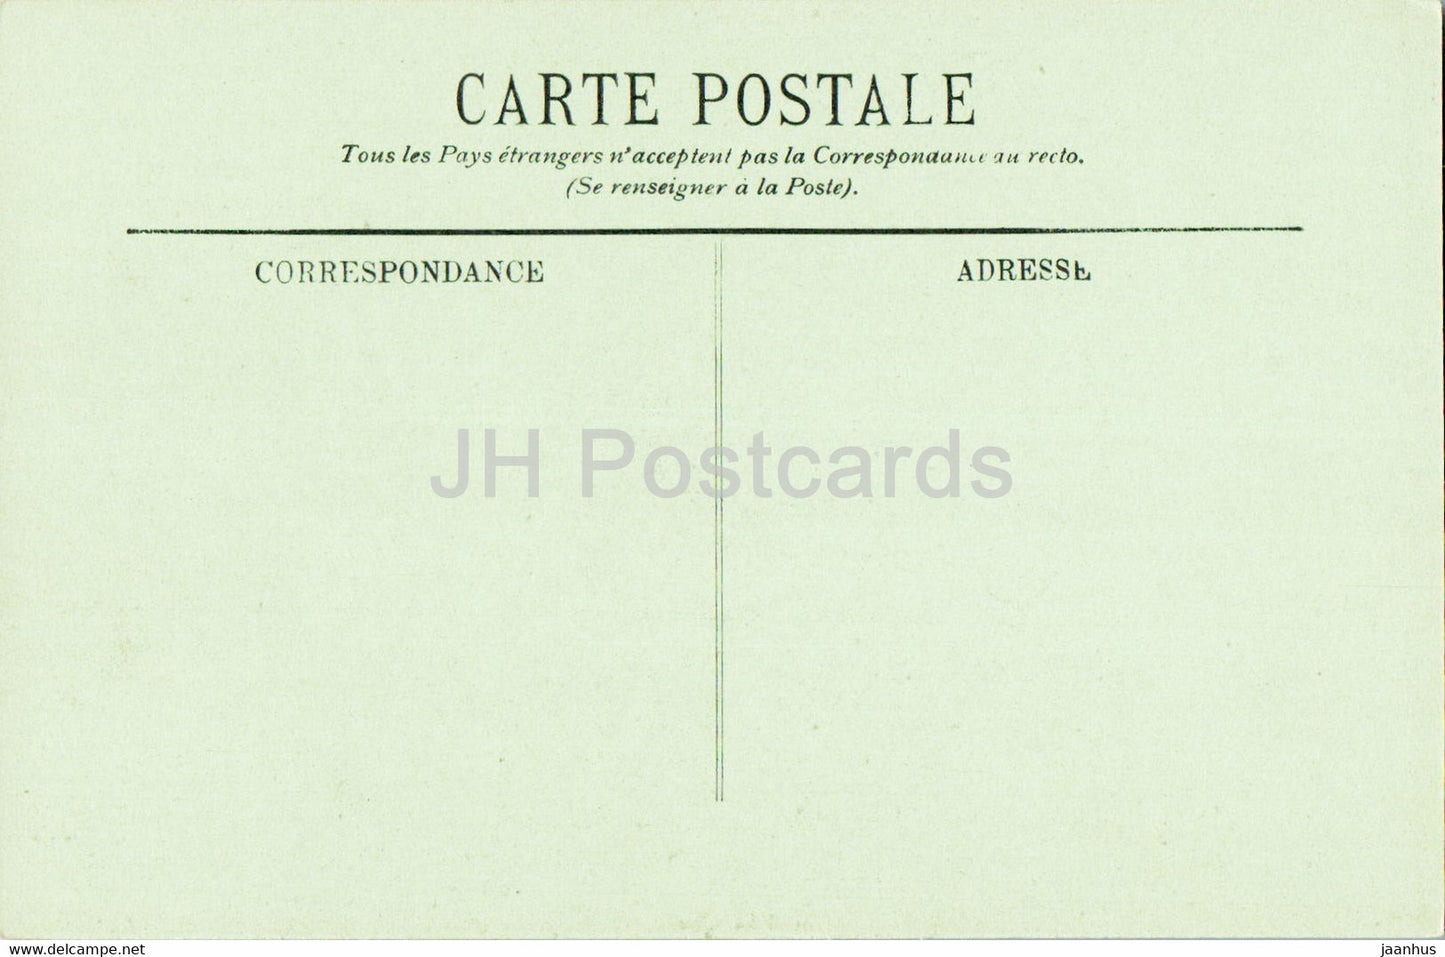 Lourdes - La Basilique - Les Piscines et la Grotte - cathedral - 42 - old postcard - France - unused